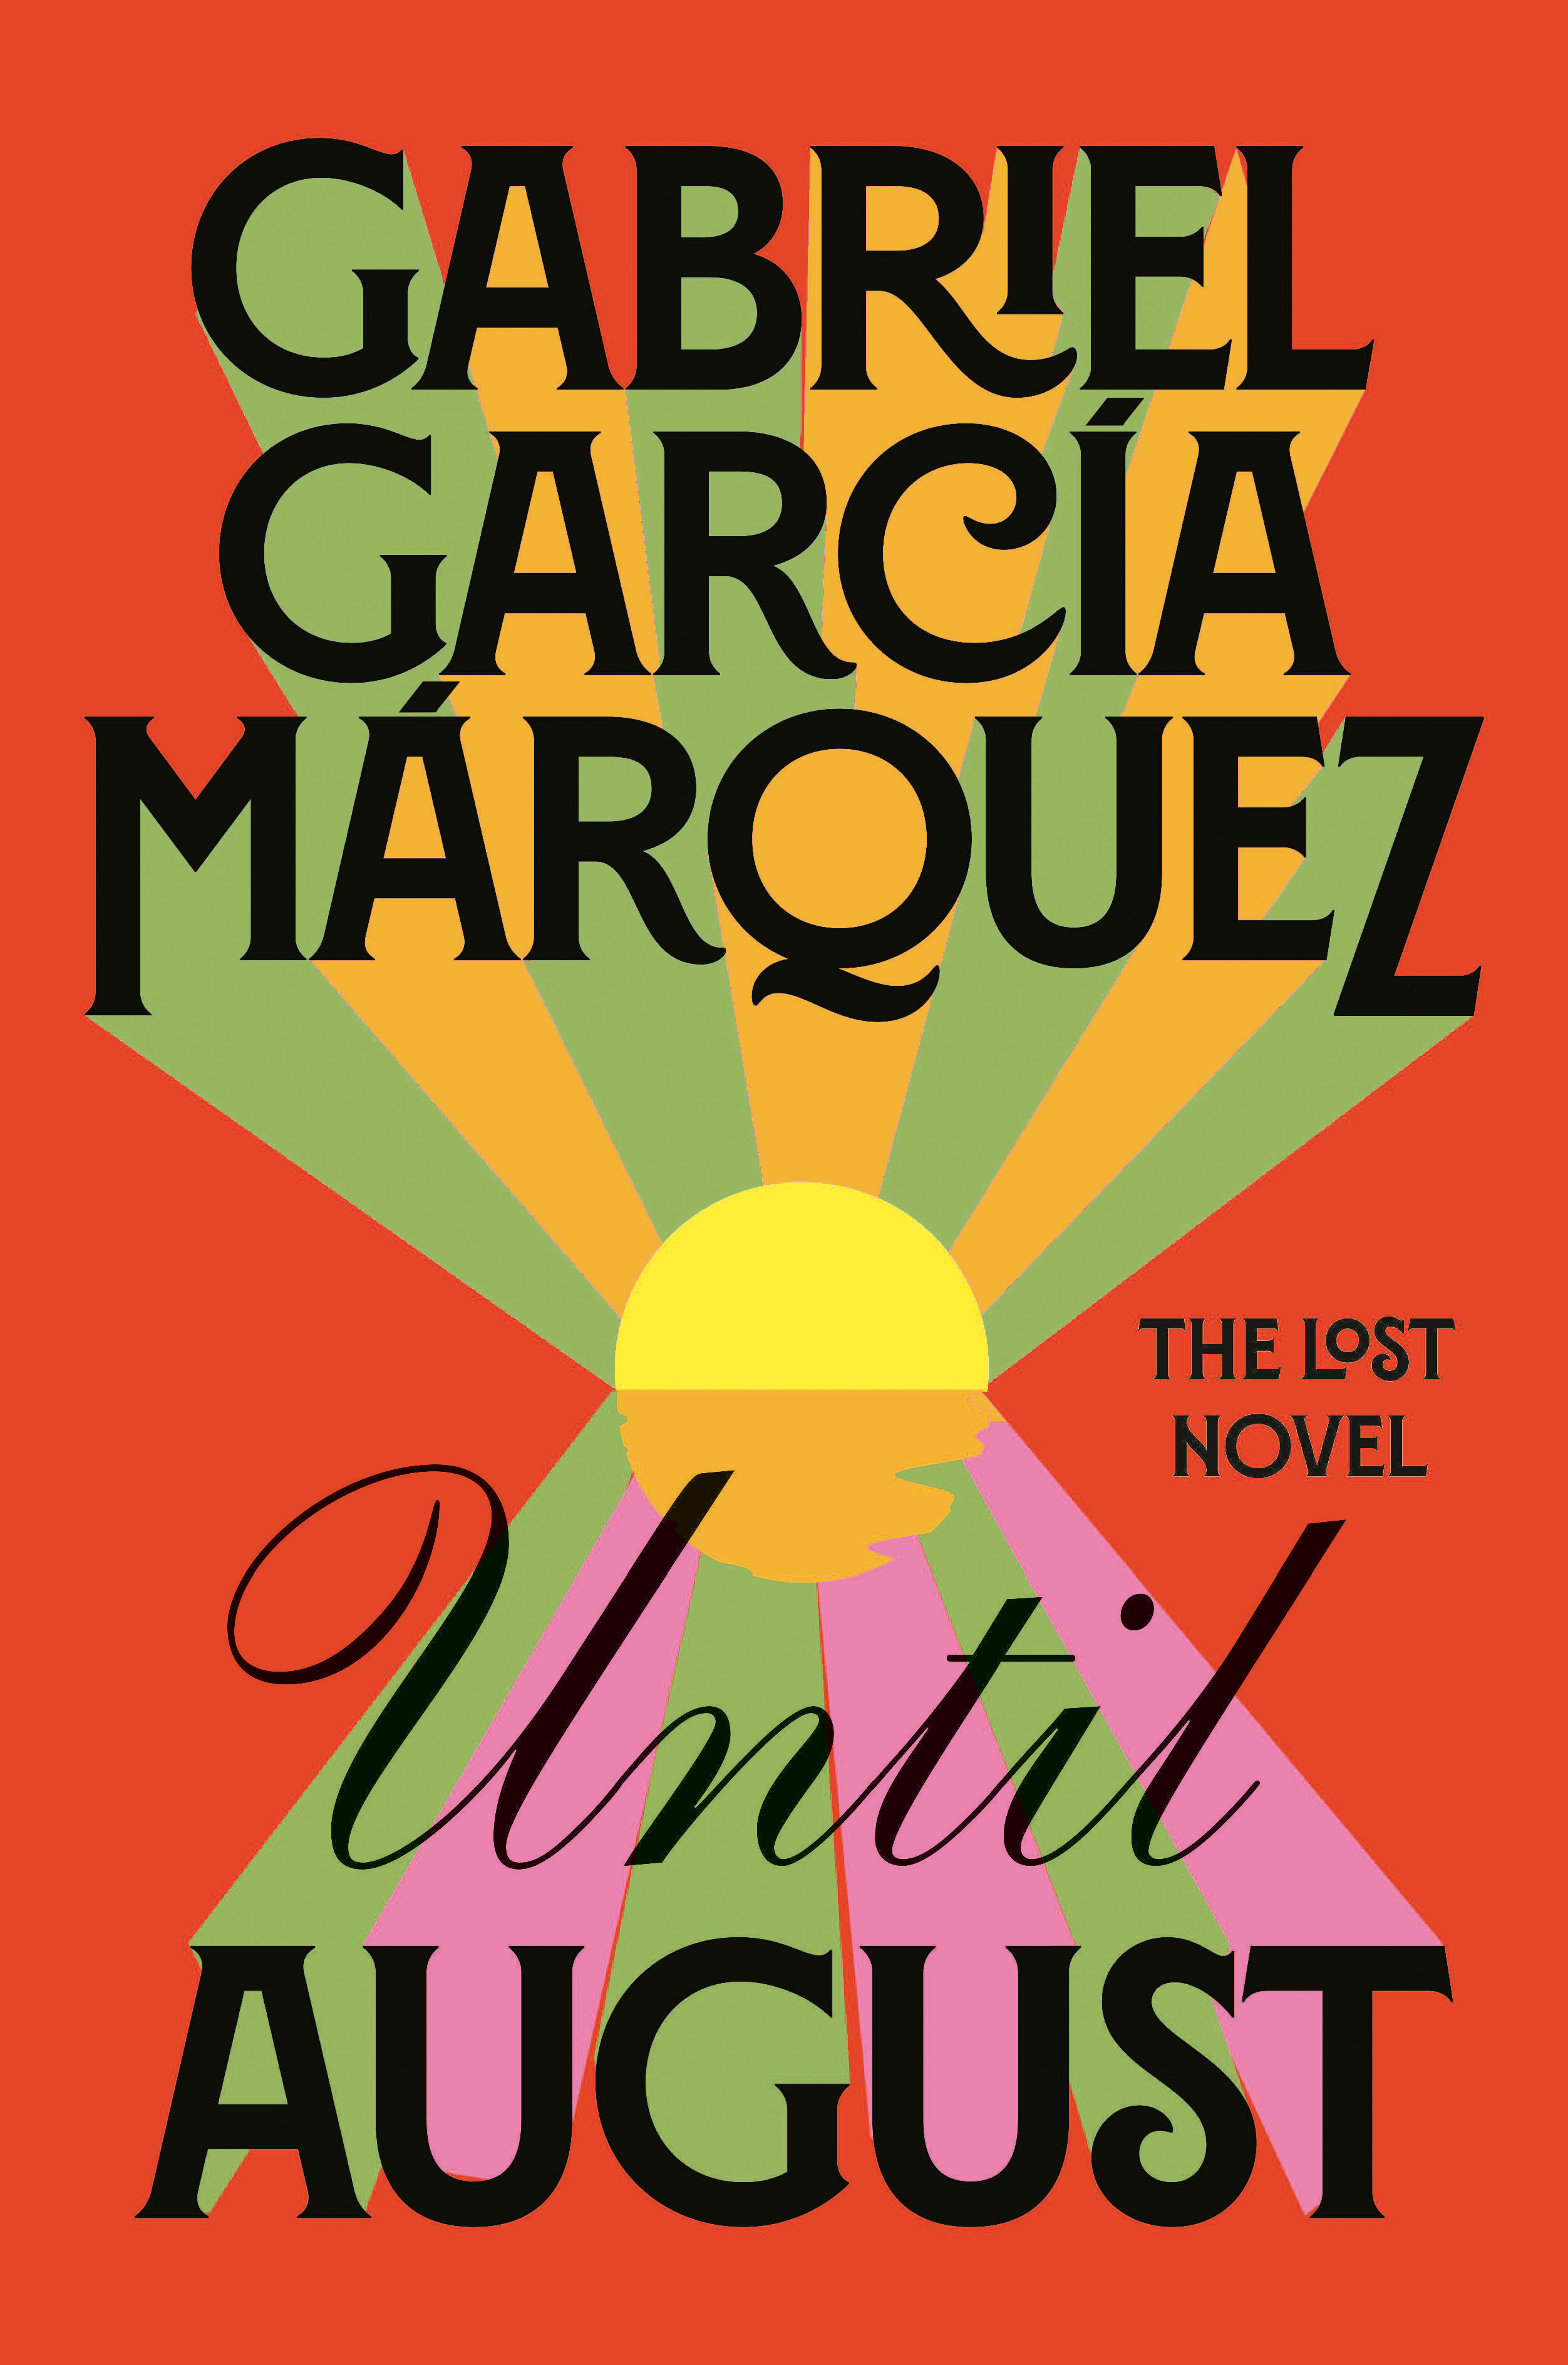 Until August : A novel | García Márquez, Gabriel (Auteur)